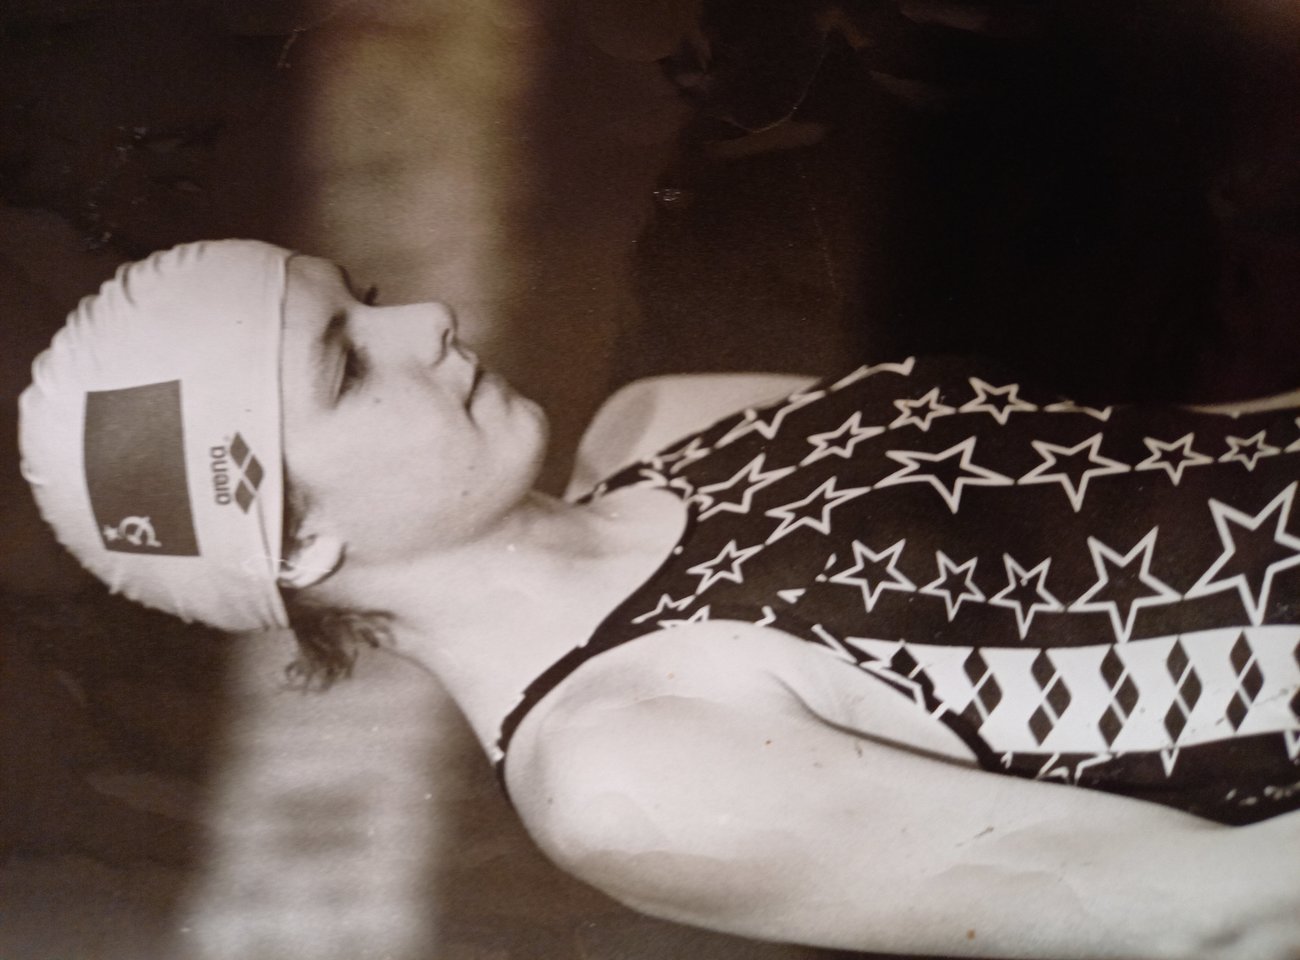 Europos jaunių plaukimo čempionė A.Buzelytė buvo daug kam atpažįstama iš žurnalų viršelių.<br>Nuotr. iš asmeninio albumo